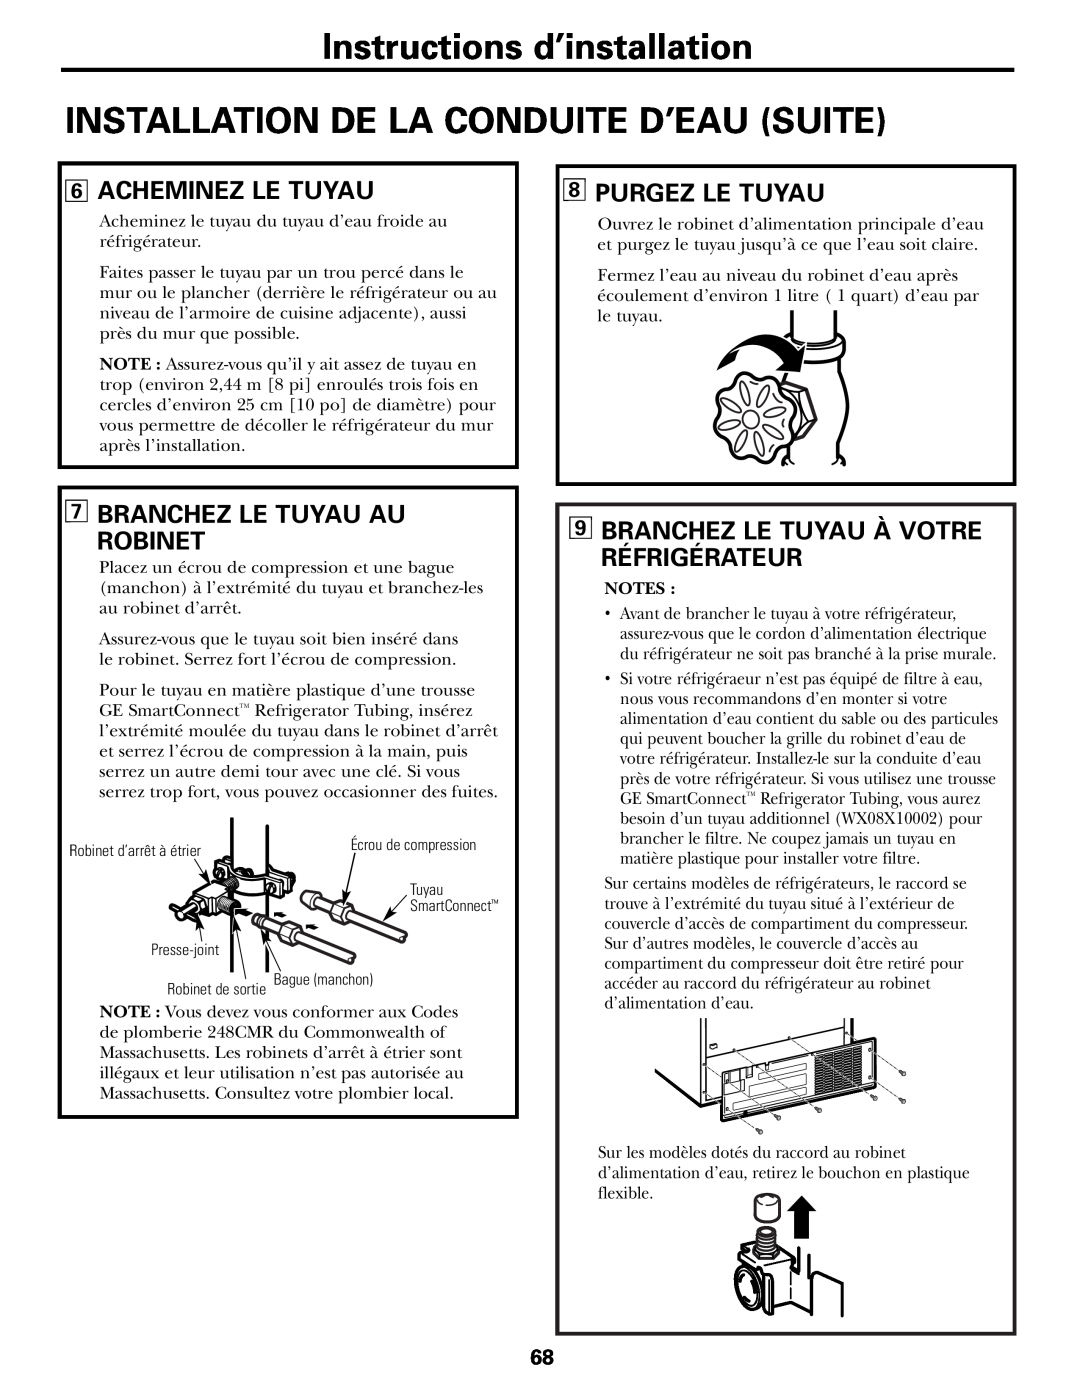 GE Instructions d’installation INSTALLATION DE LA CONDUITE D’EAU SUITE, Acheminez Le Tuyau, Purgez Le Tuyau 